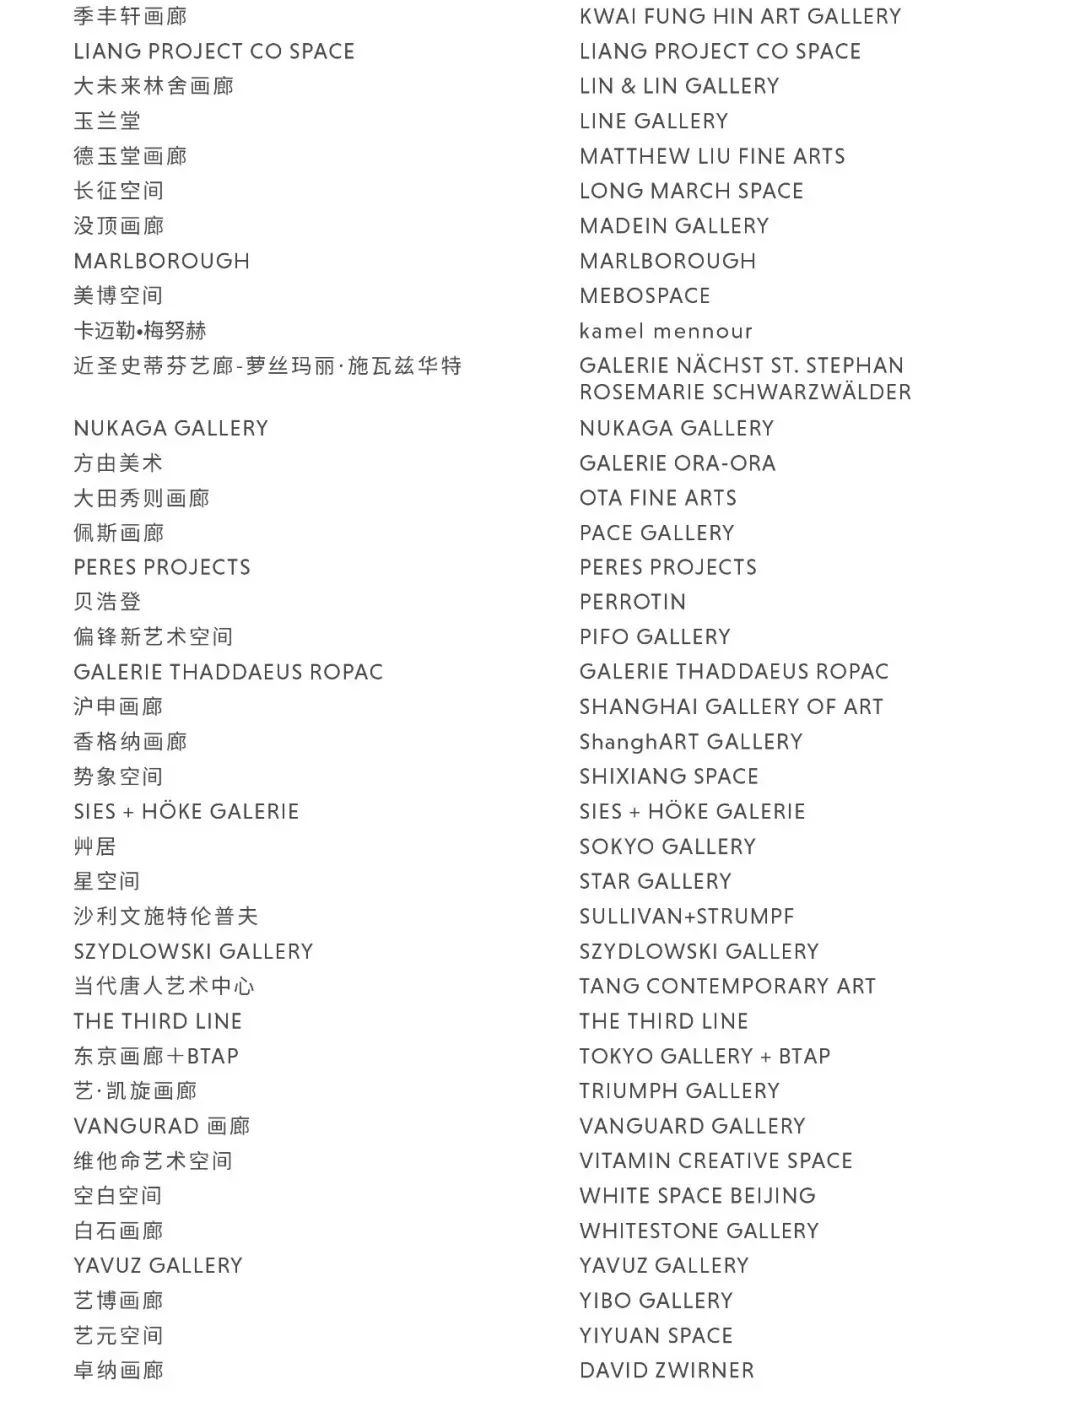 上海ART021开幕 103家顶级画廊亮相上海展览中心